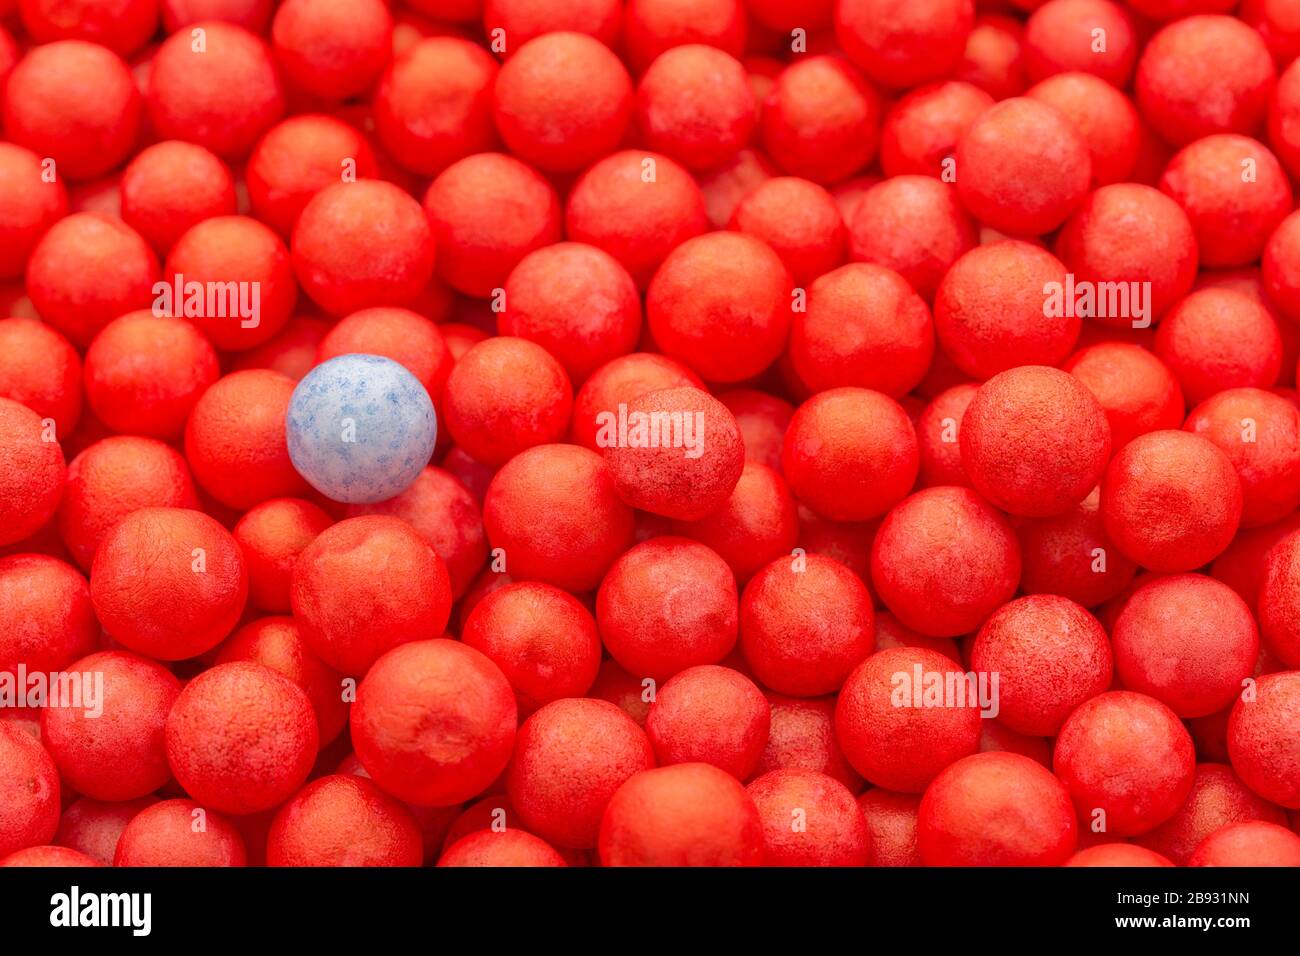 Petites boules de polystyrène de couleur rouge et bleu. Conceptuel pour l'auto-isolation de Covid-19, porteur de maladie, personne infectée, isolée, perdue dans la foule Banque D'Images